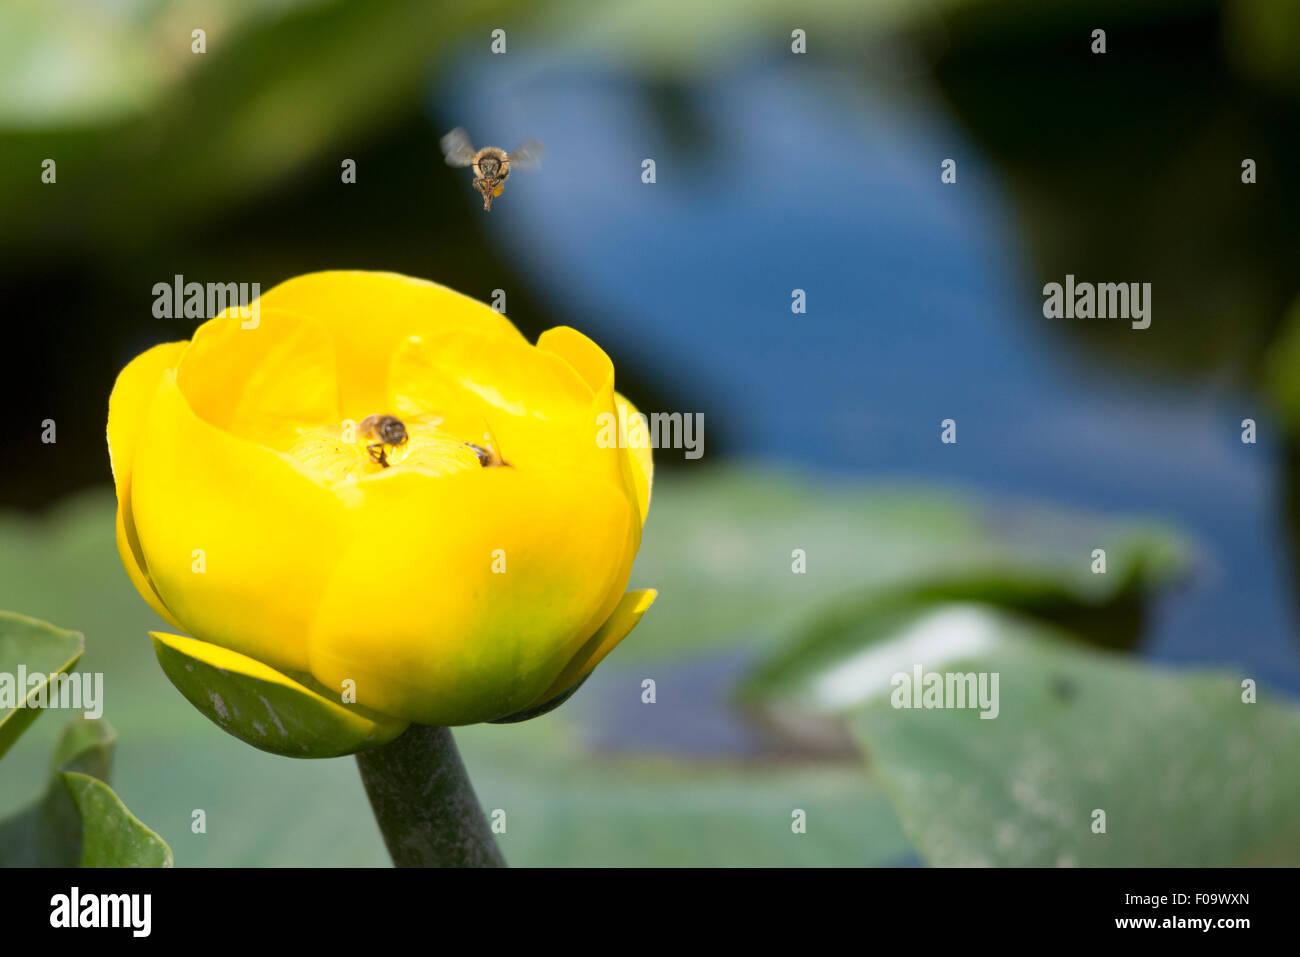 Biene schwebt über gelben Teich Lilie Blume, große Marsh, Oregon. Stockfoto